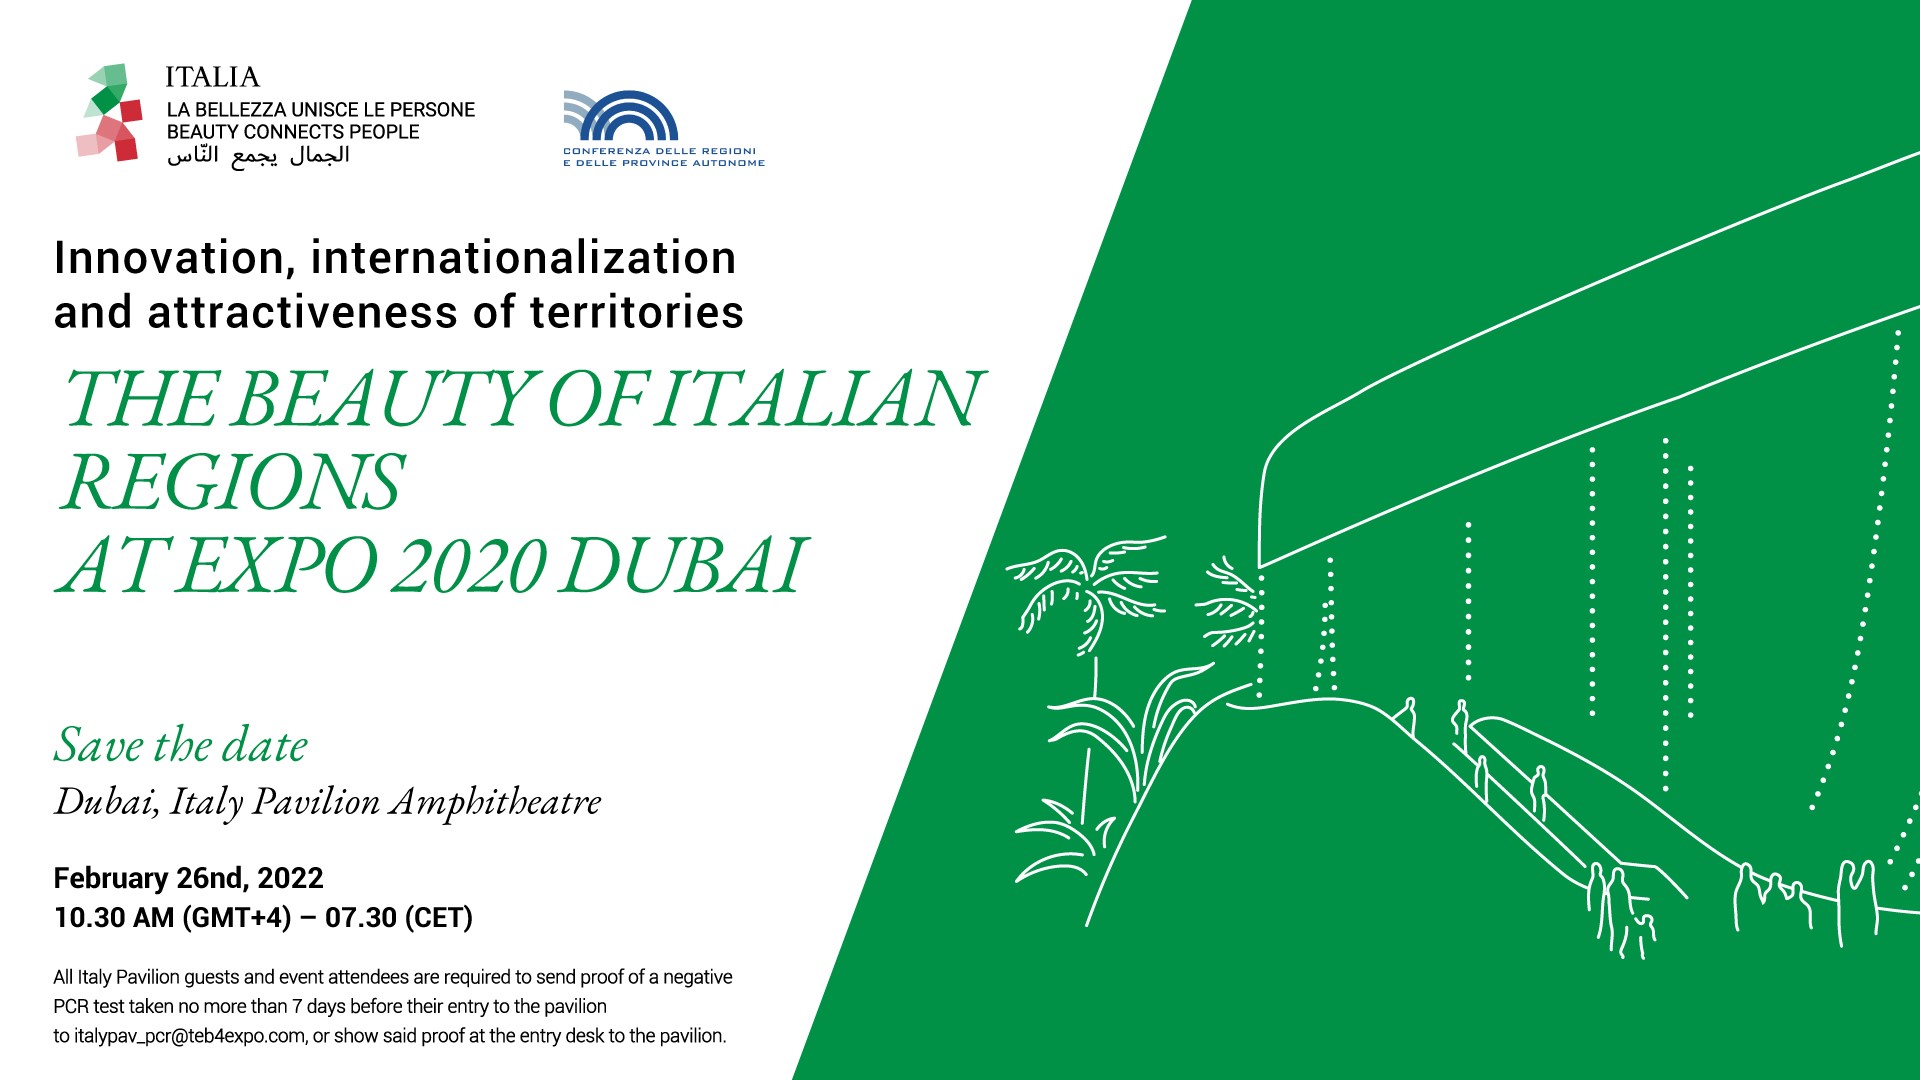 The Beauty of Italian Regions at Expo 2020 Dubai